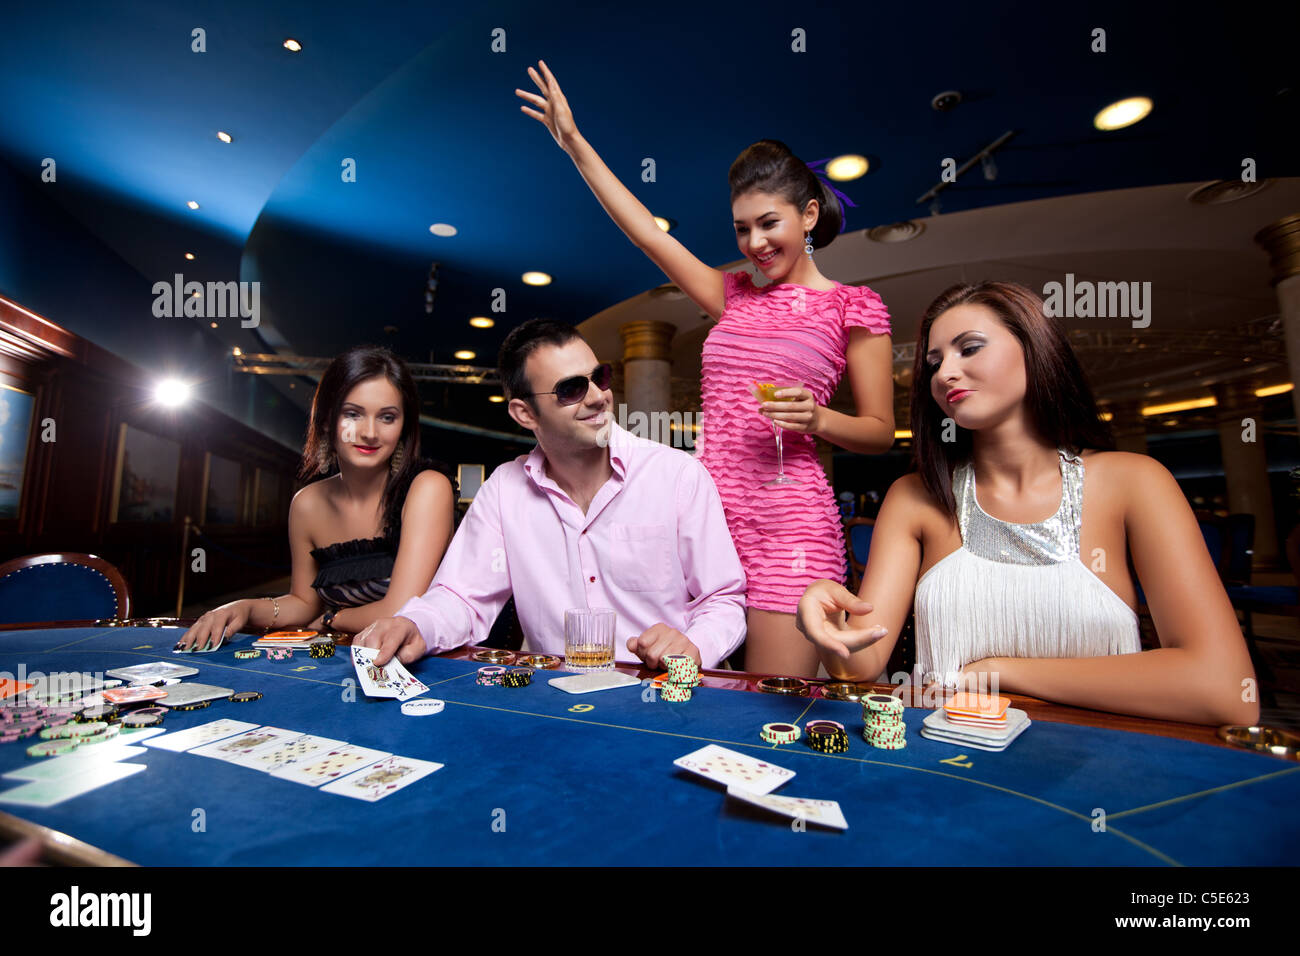 La gente seduta in un casinò e giocare a poker, Uomo con occhiali vincere Foto Stock